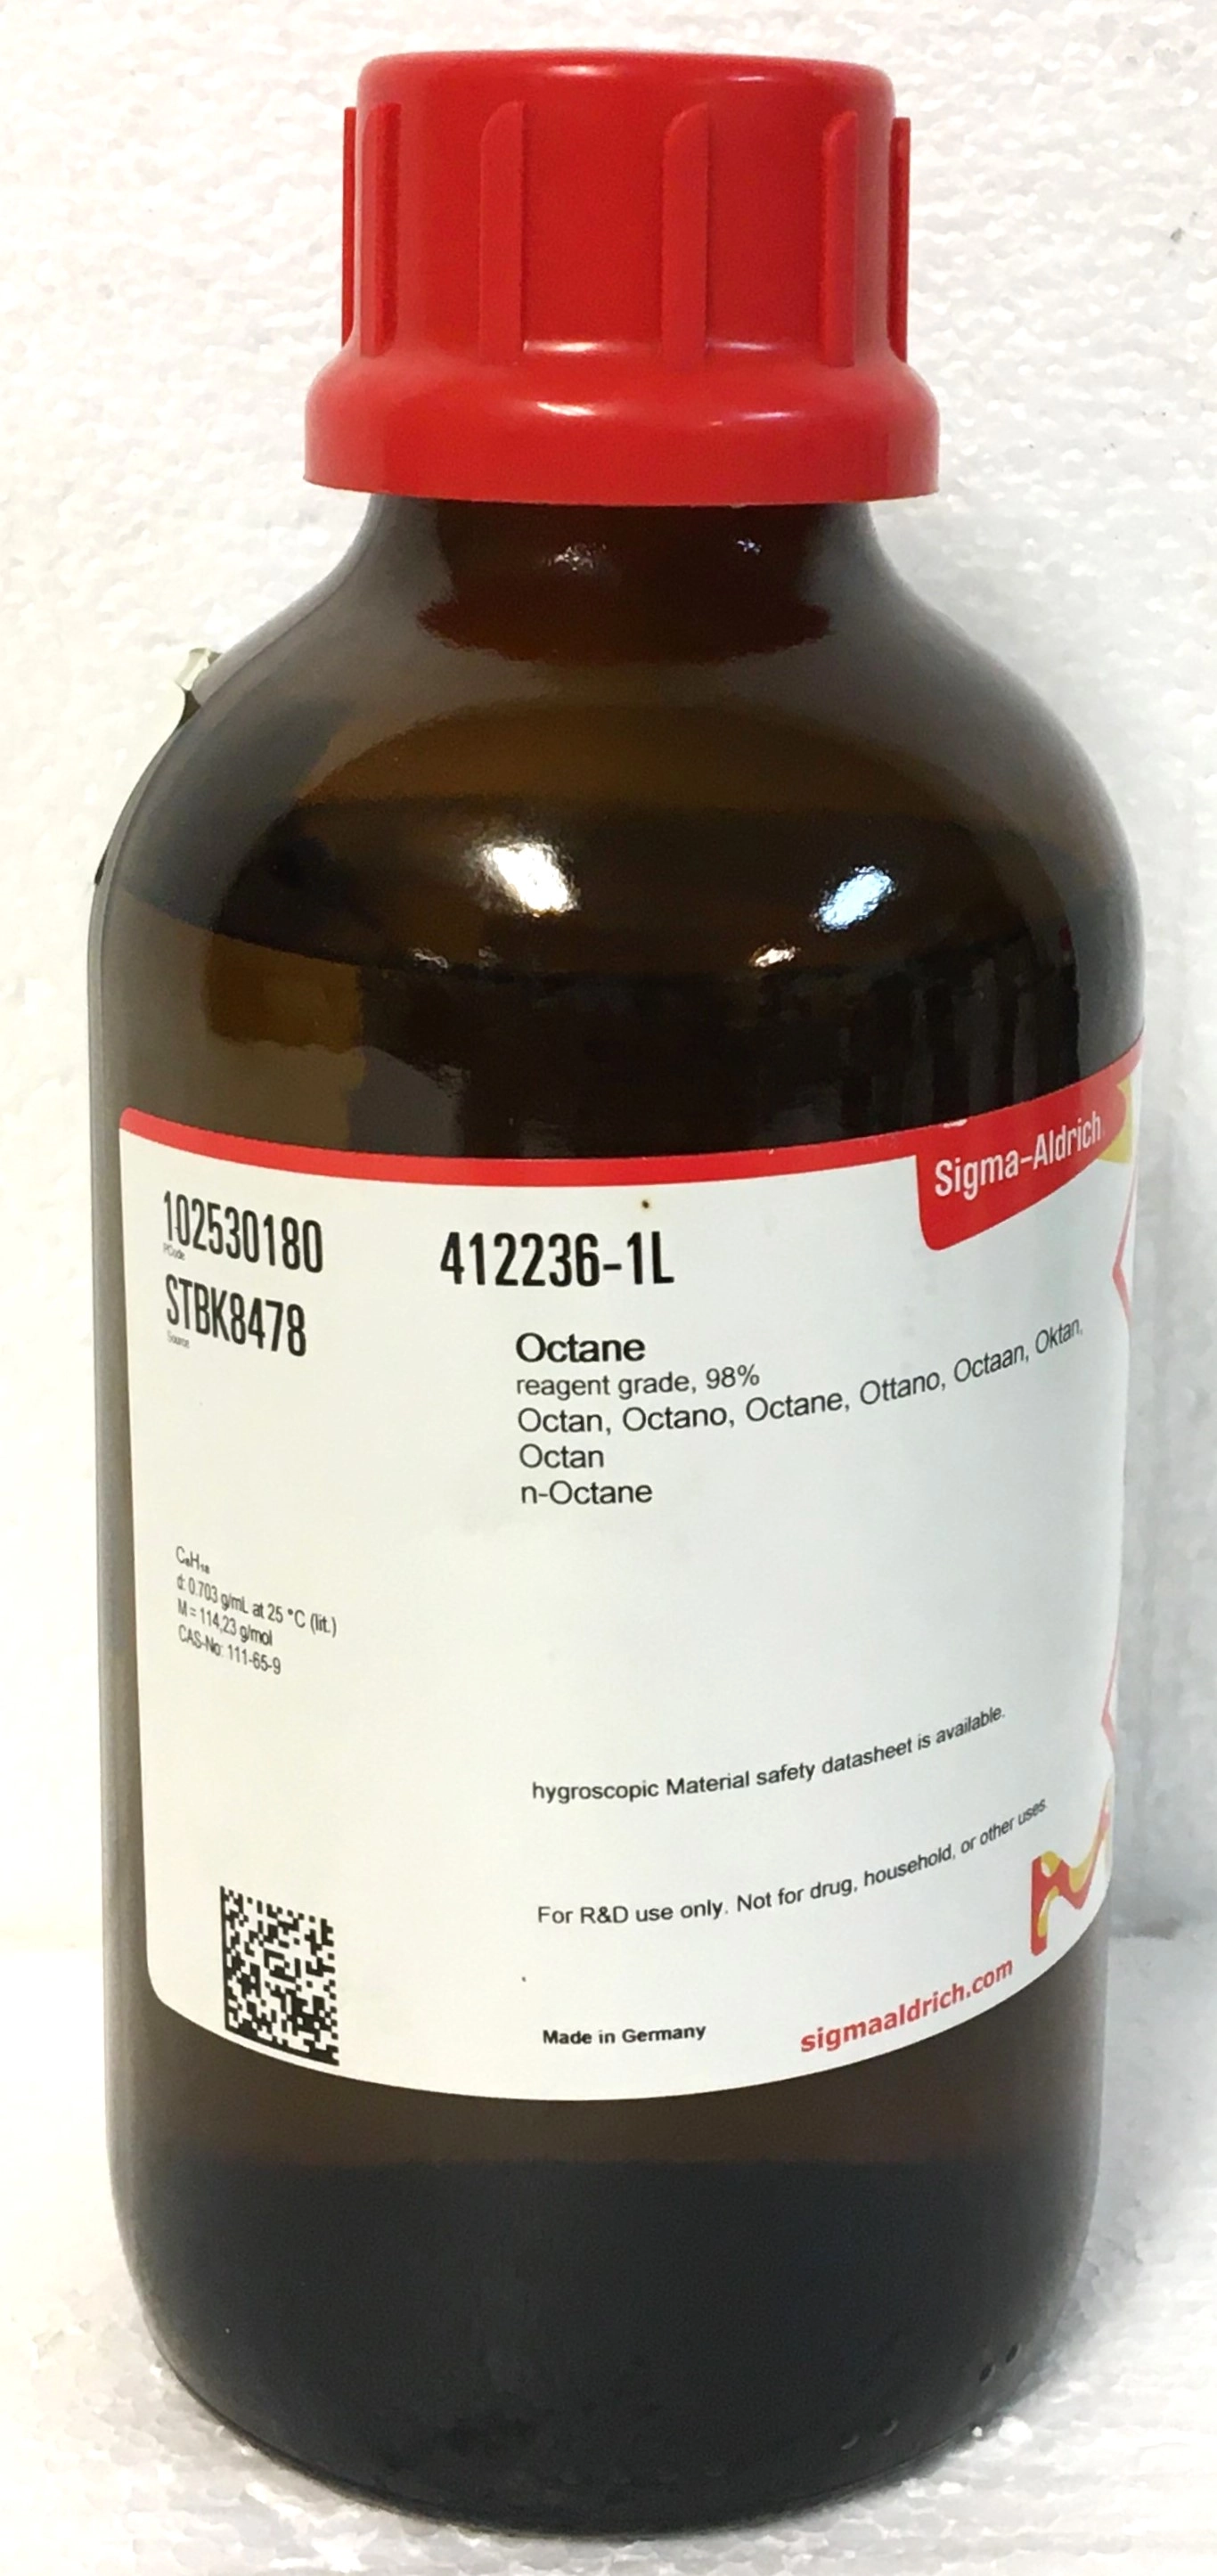 Sigma-Aldrich 412236-1L Octane - 98% (1000mL)